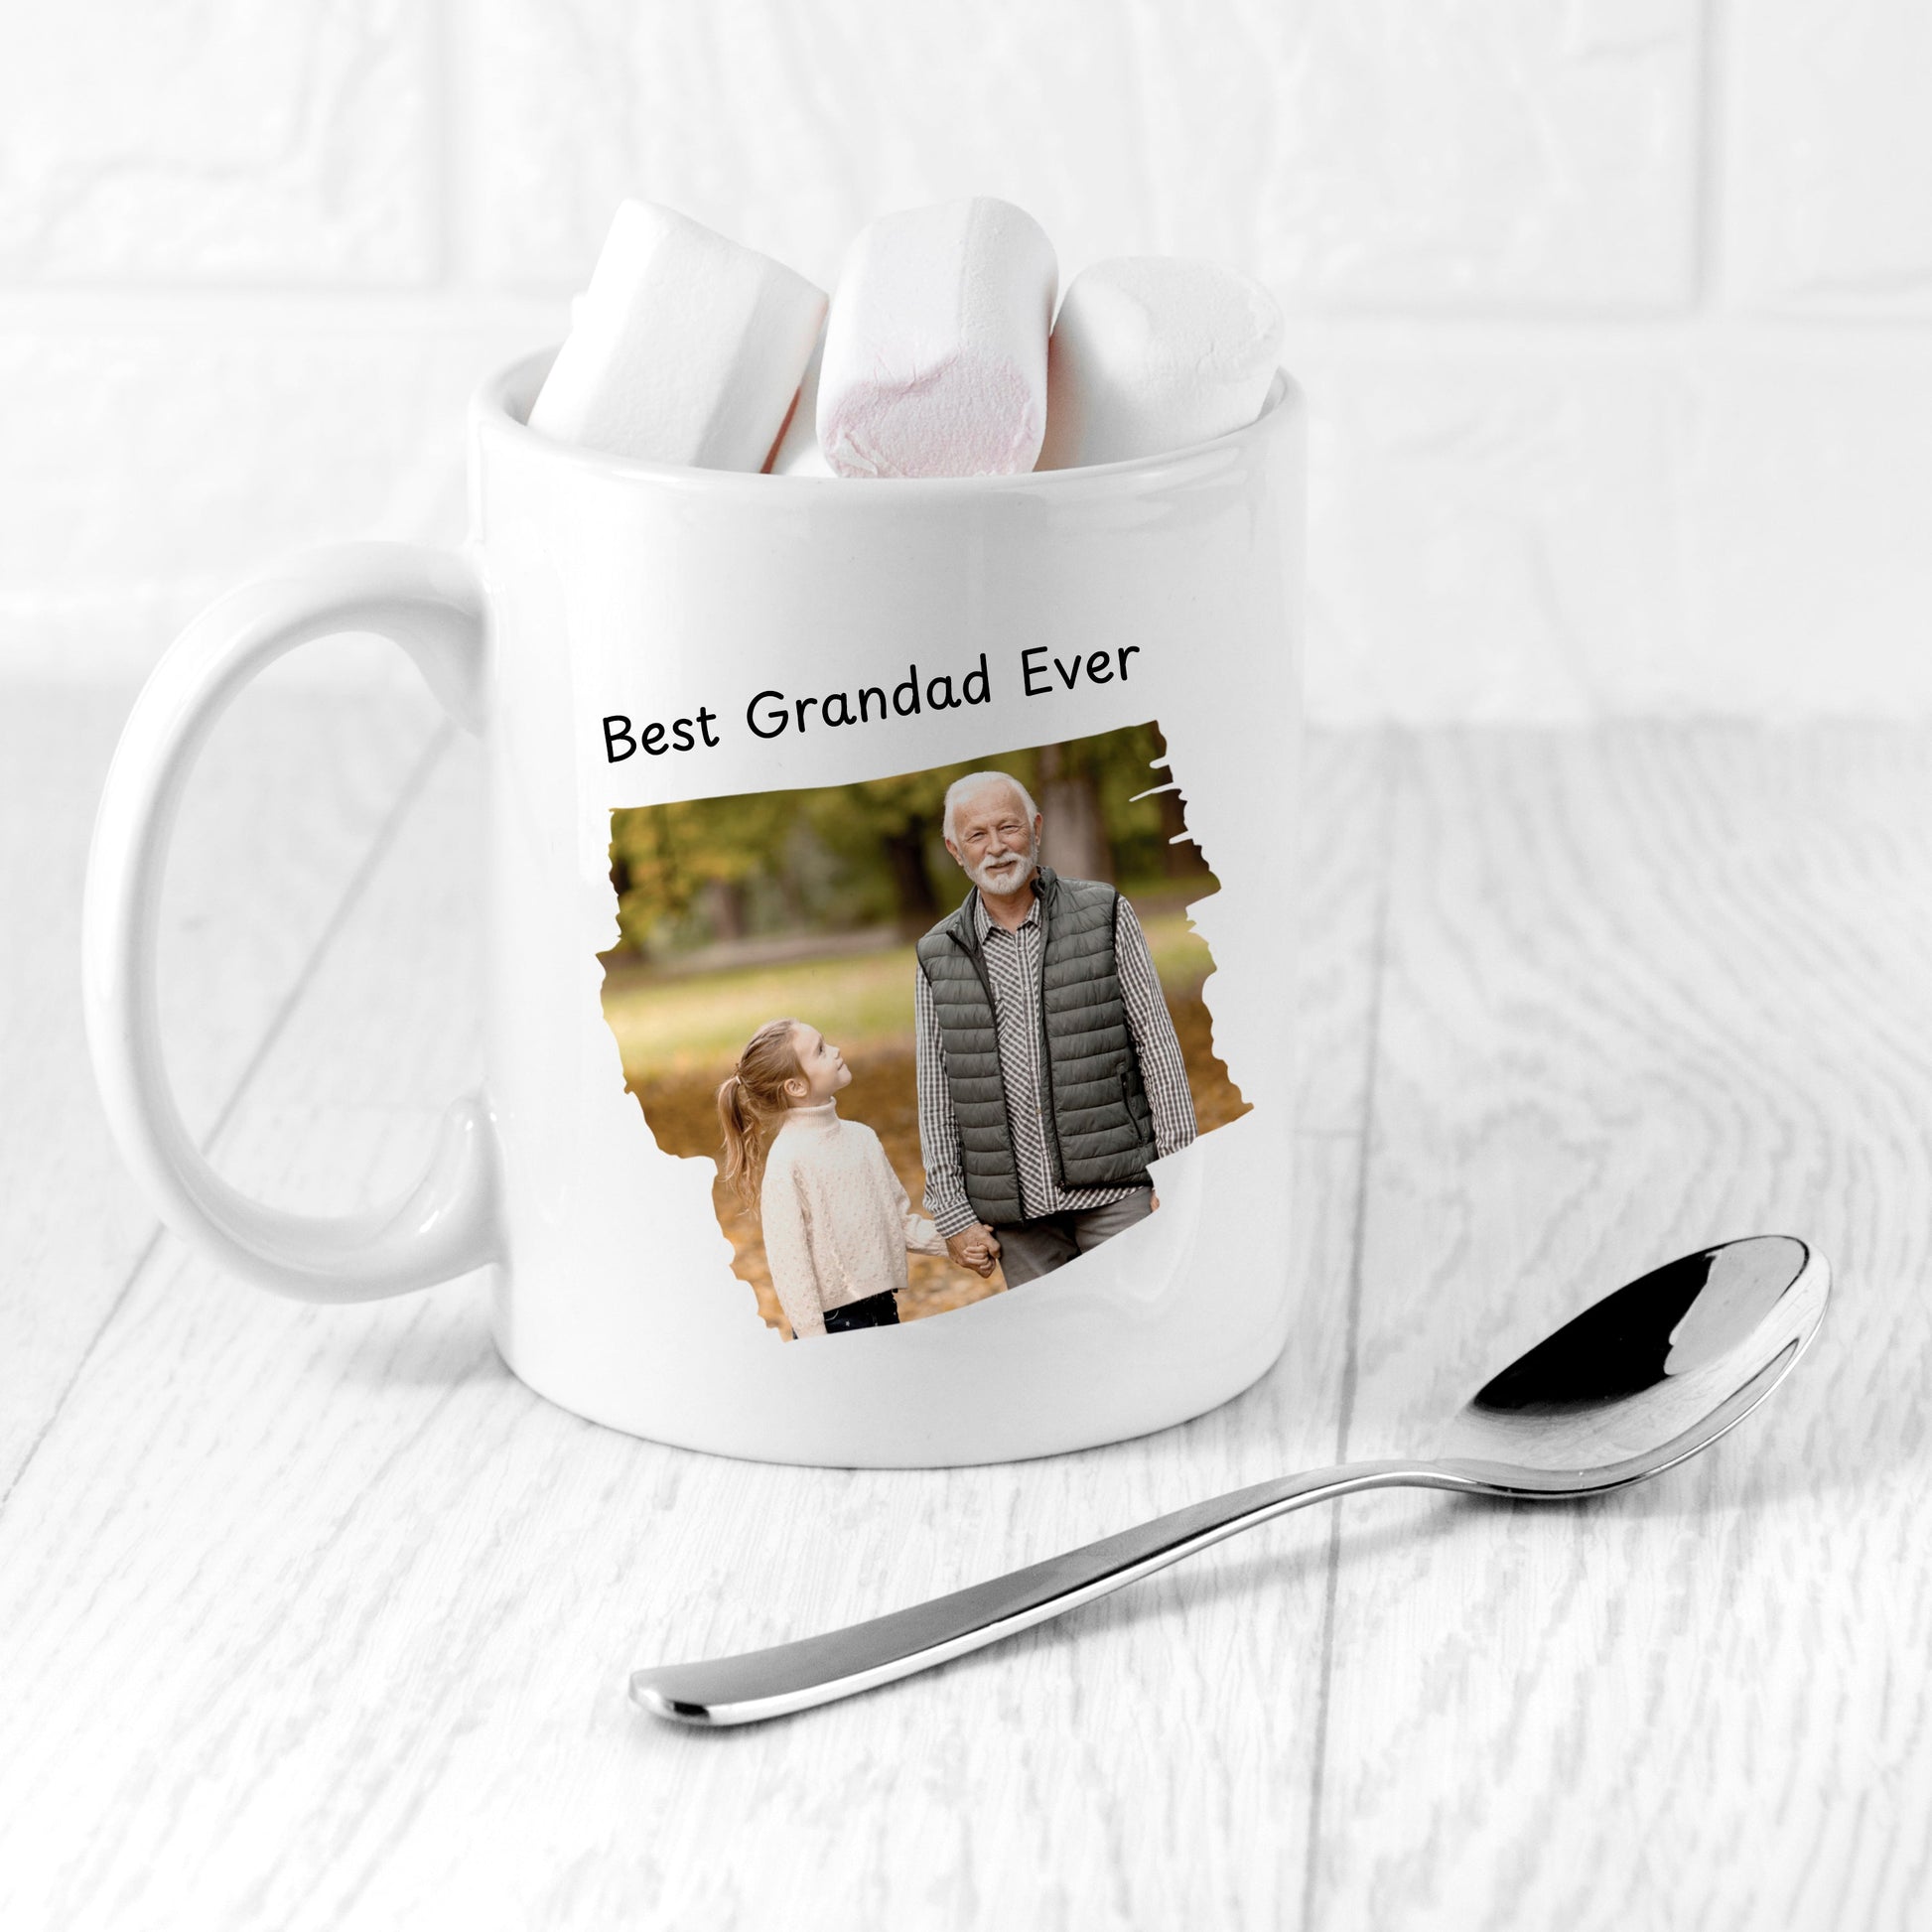 Personalized Mugs - Personalized Best Grandad Photo Mug 